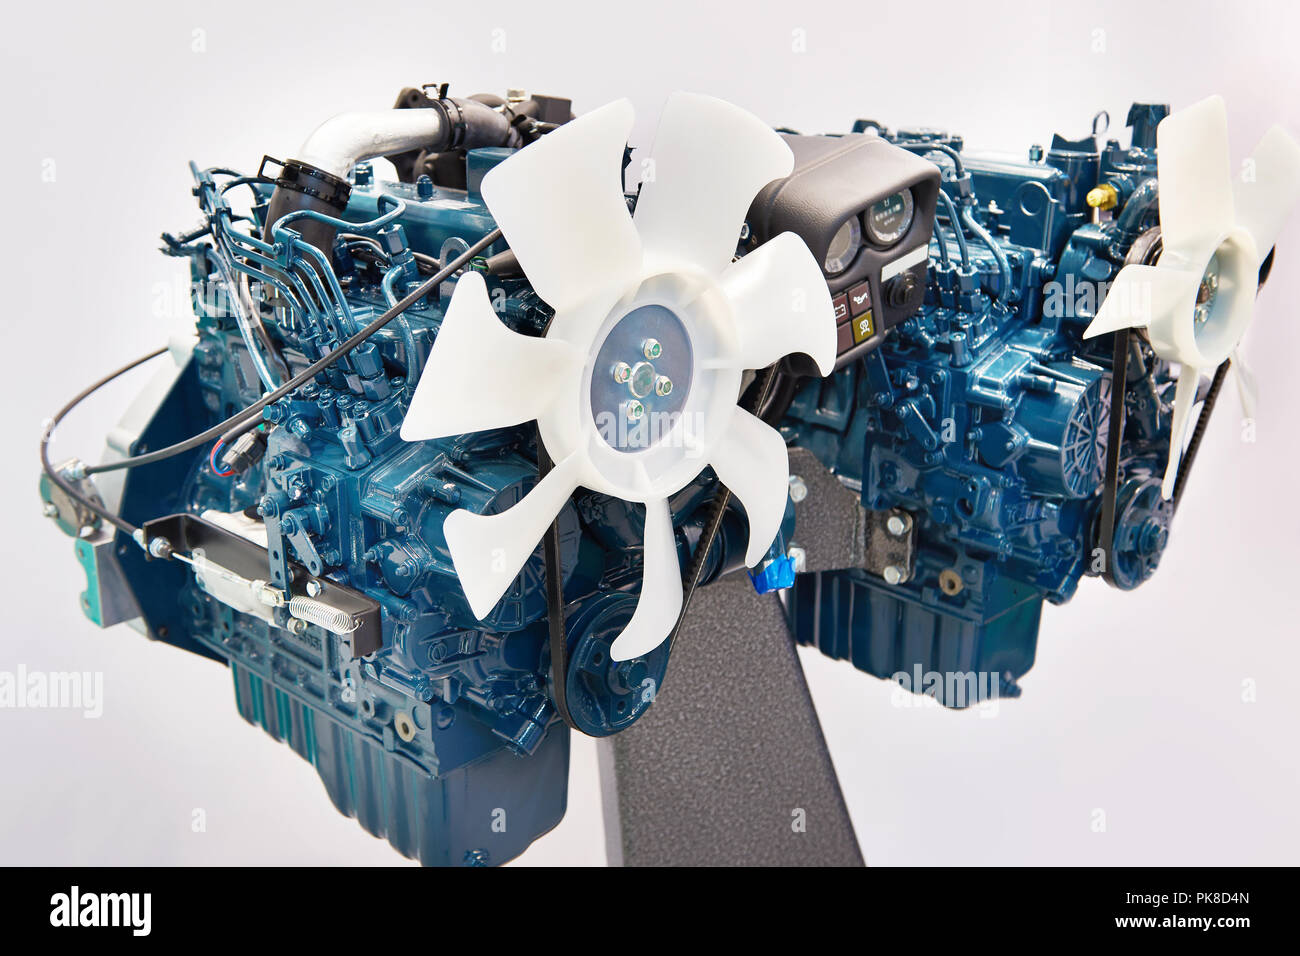 Los motores diesel de 4 cilindros para uso industrial. Foto de stock